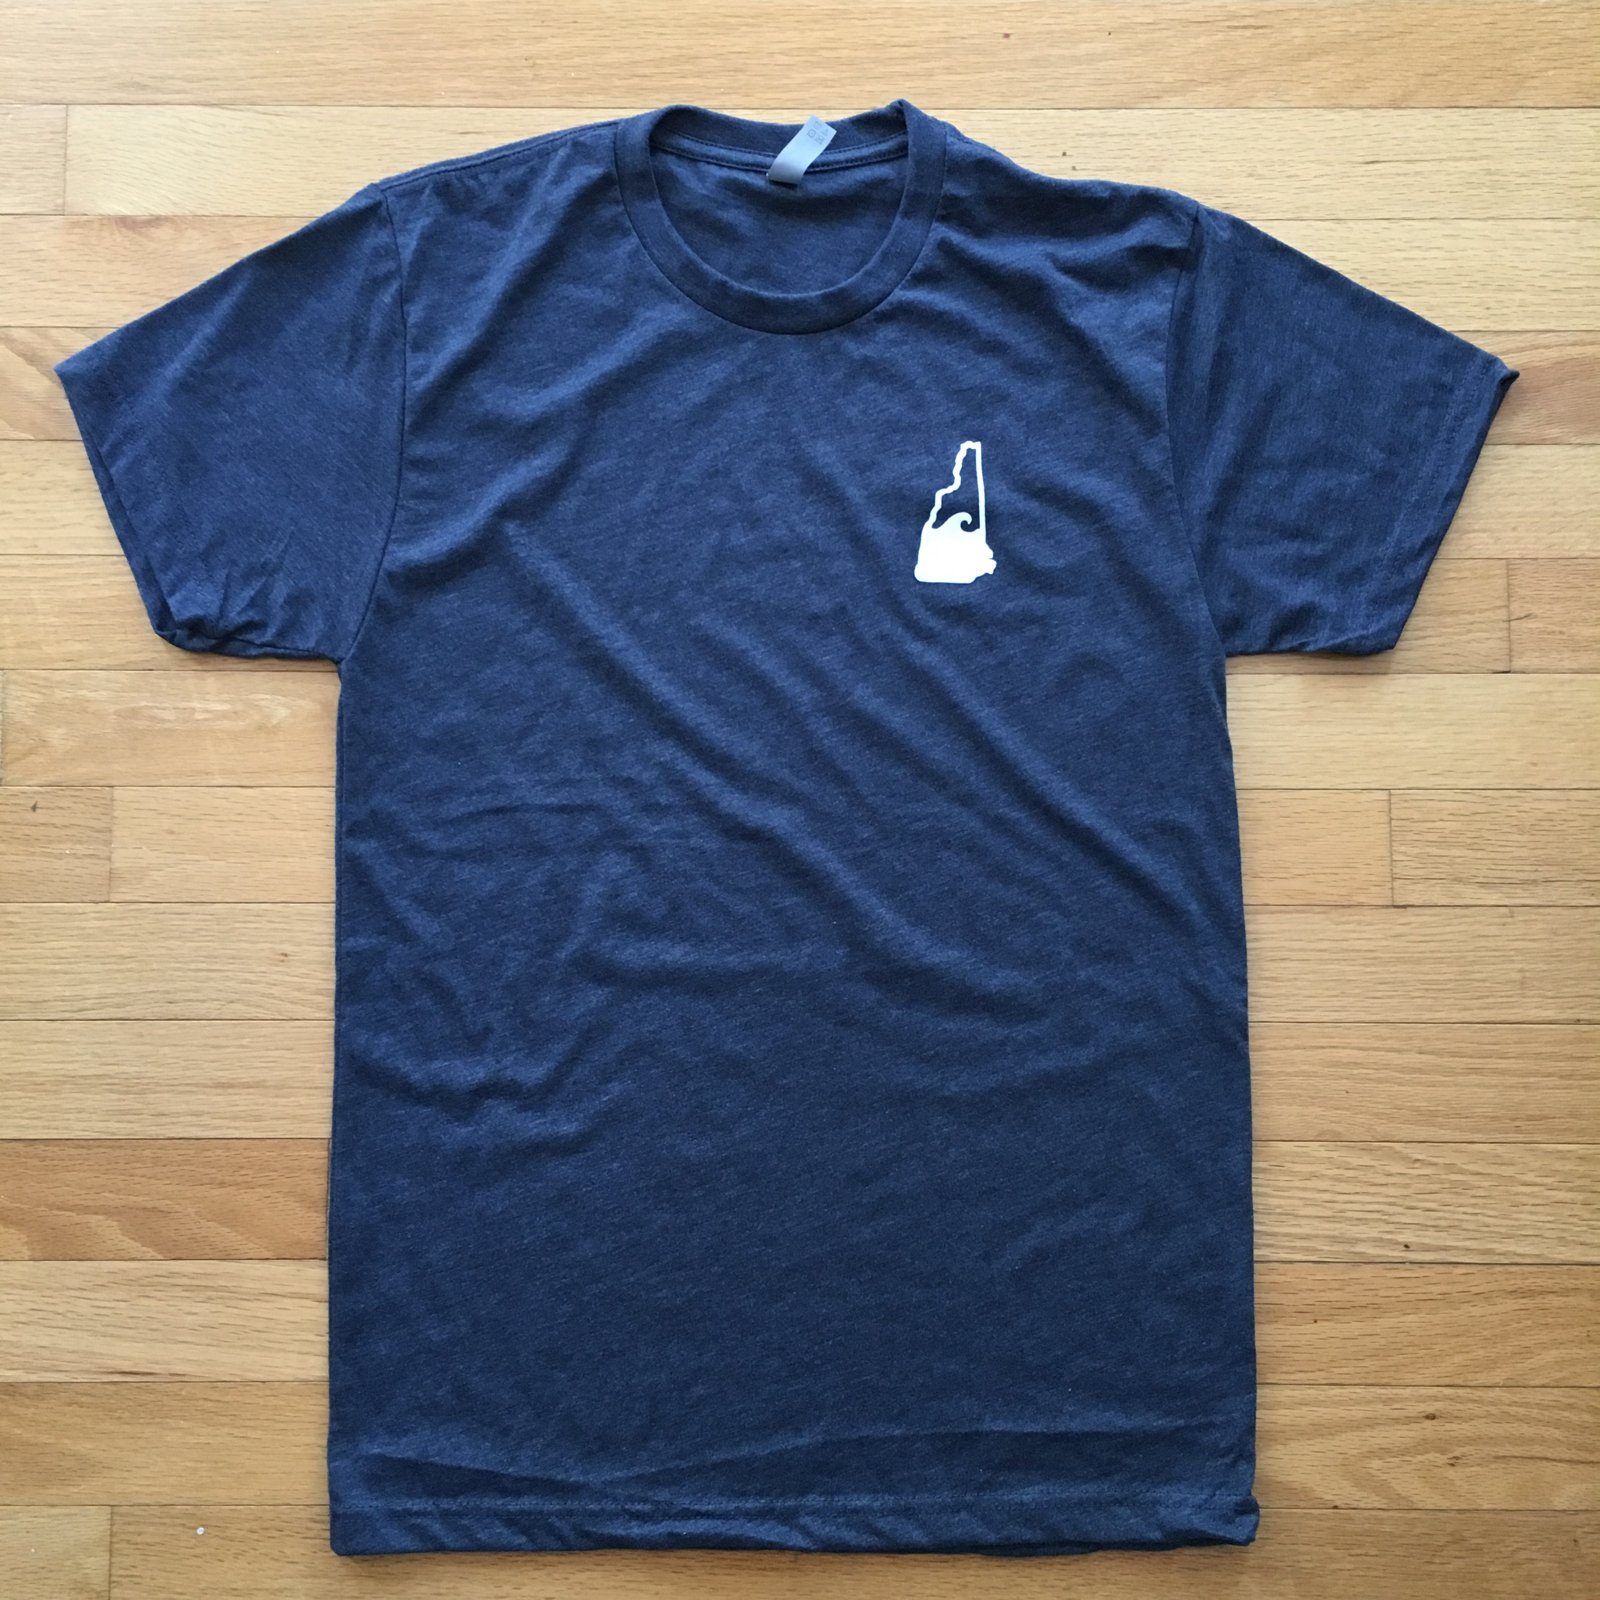 Wave logo t-shirt - unisex